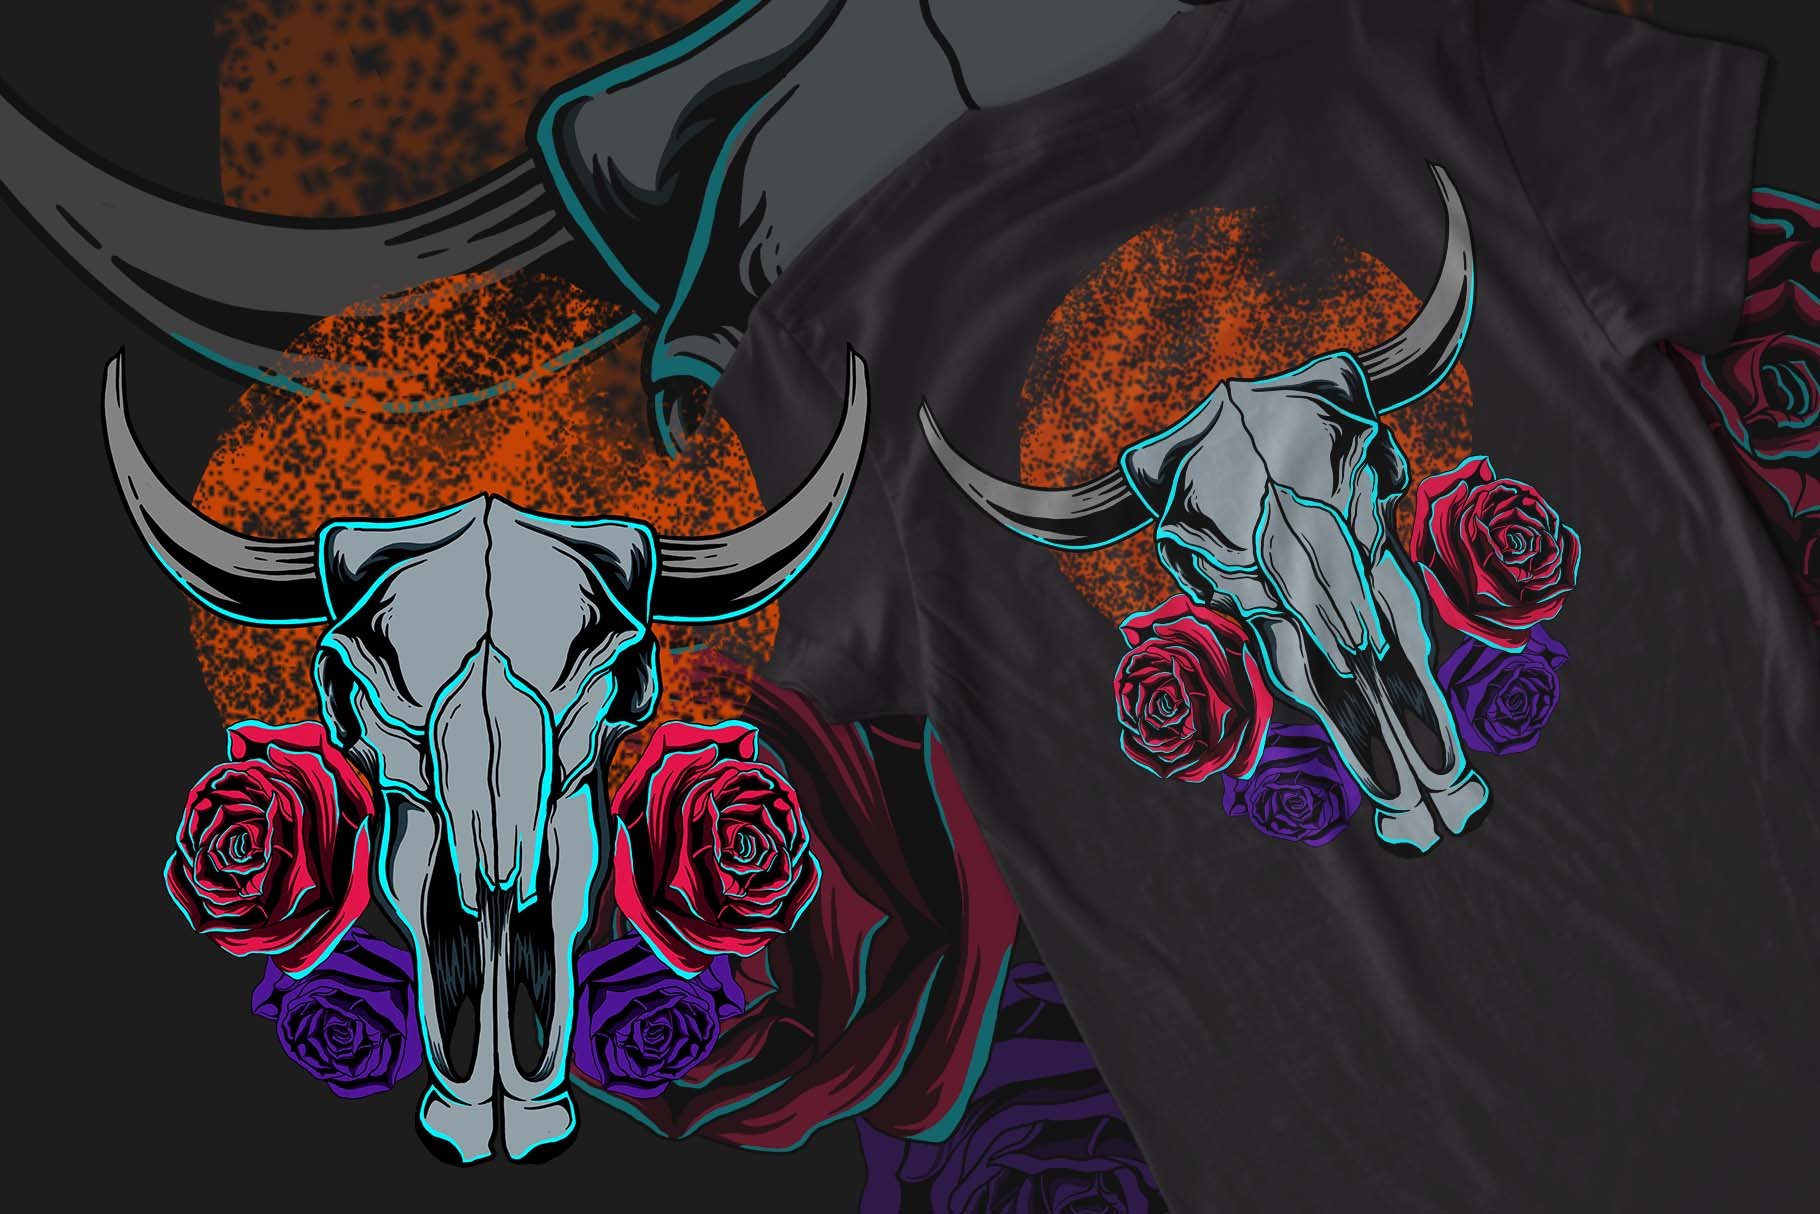 Bull and Skull T-shirt Design cover image.